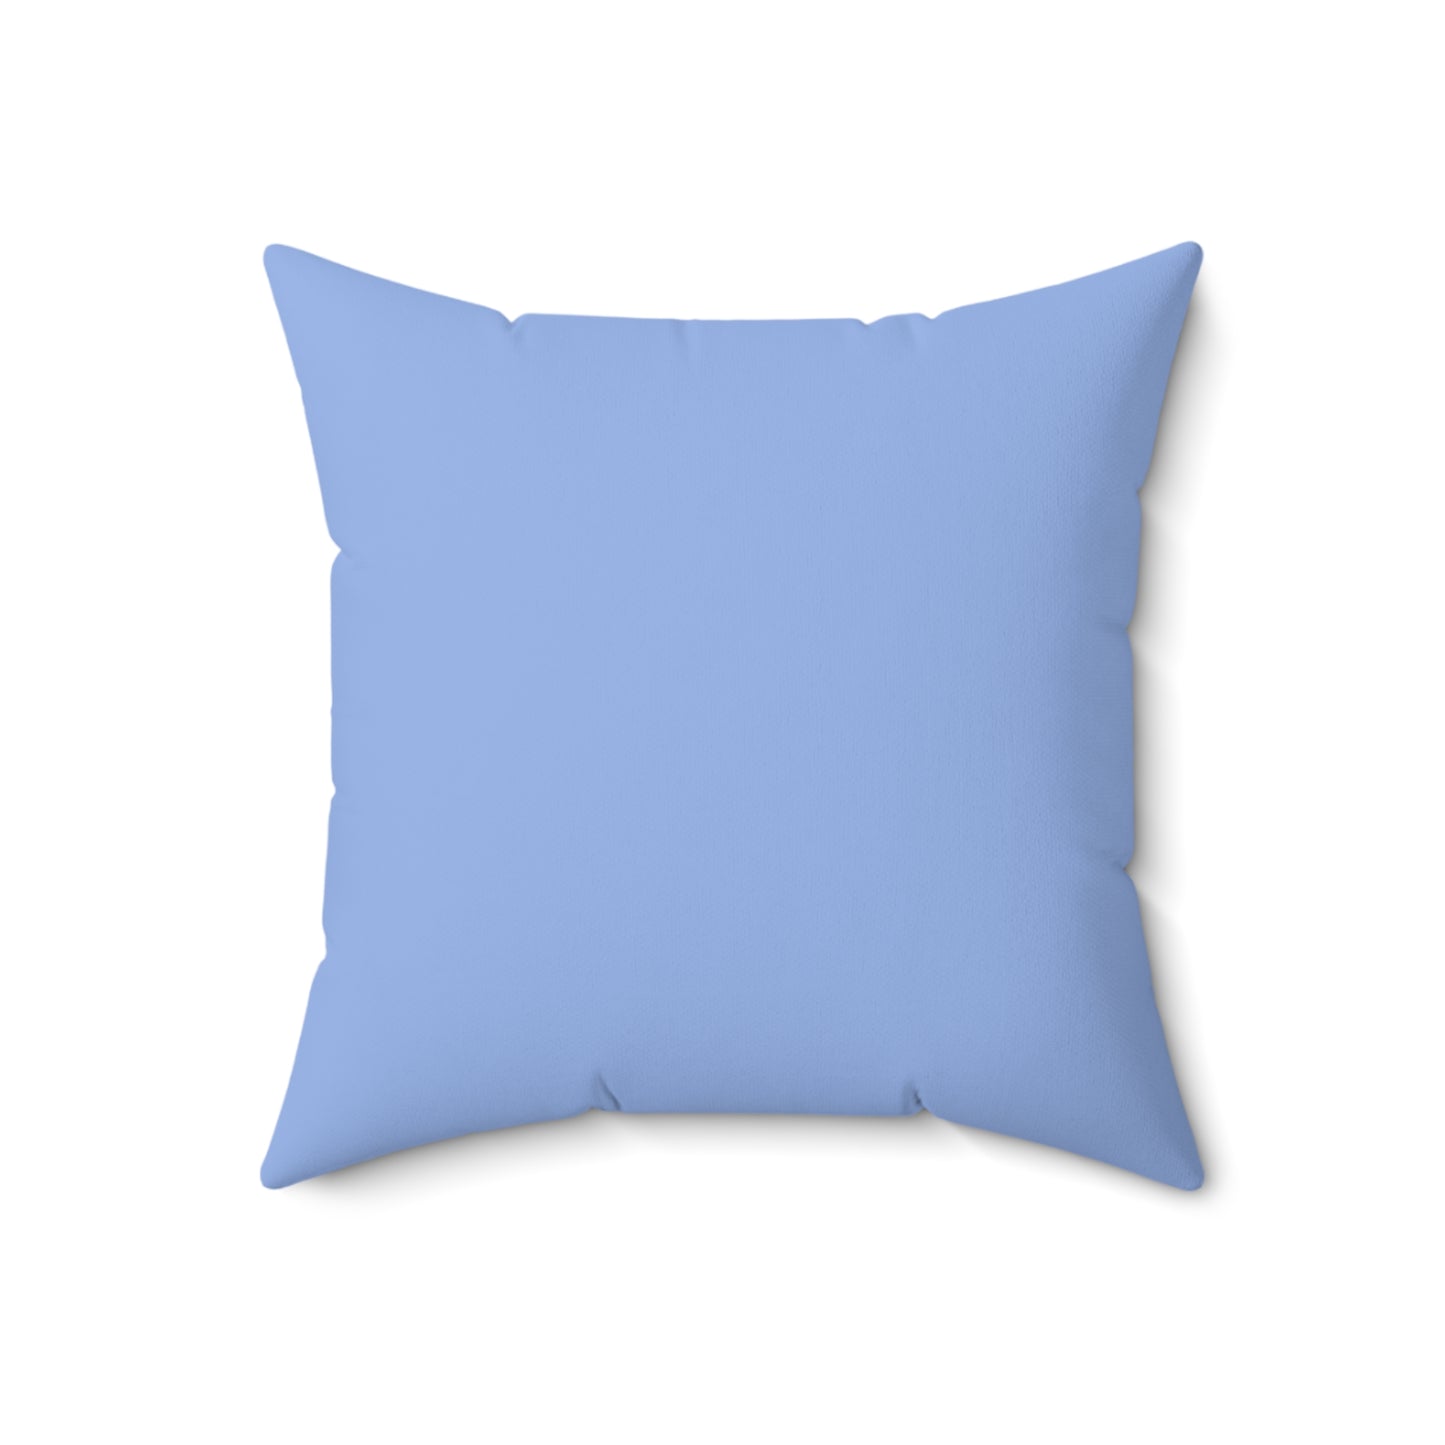 Blue Pillow / Blue Tile Print Decor